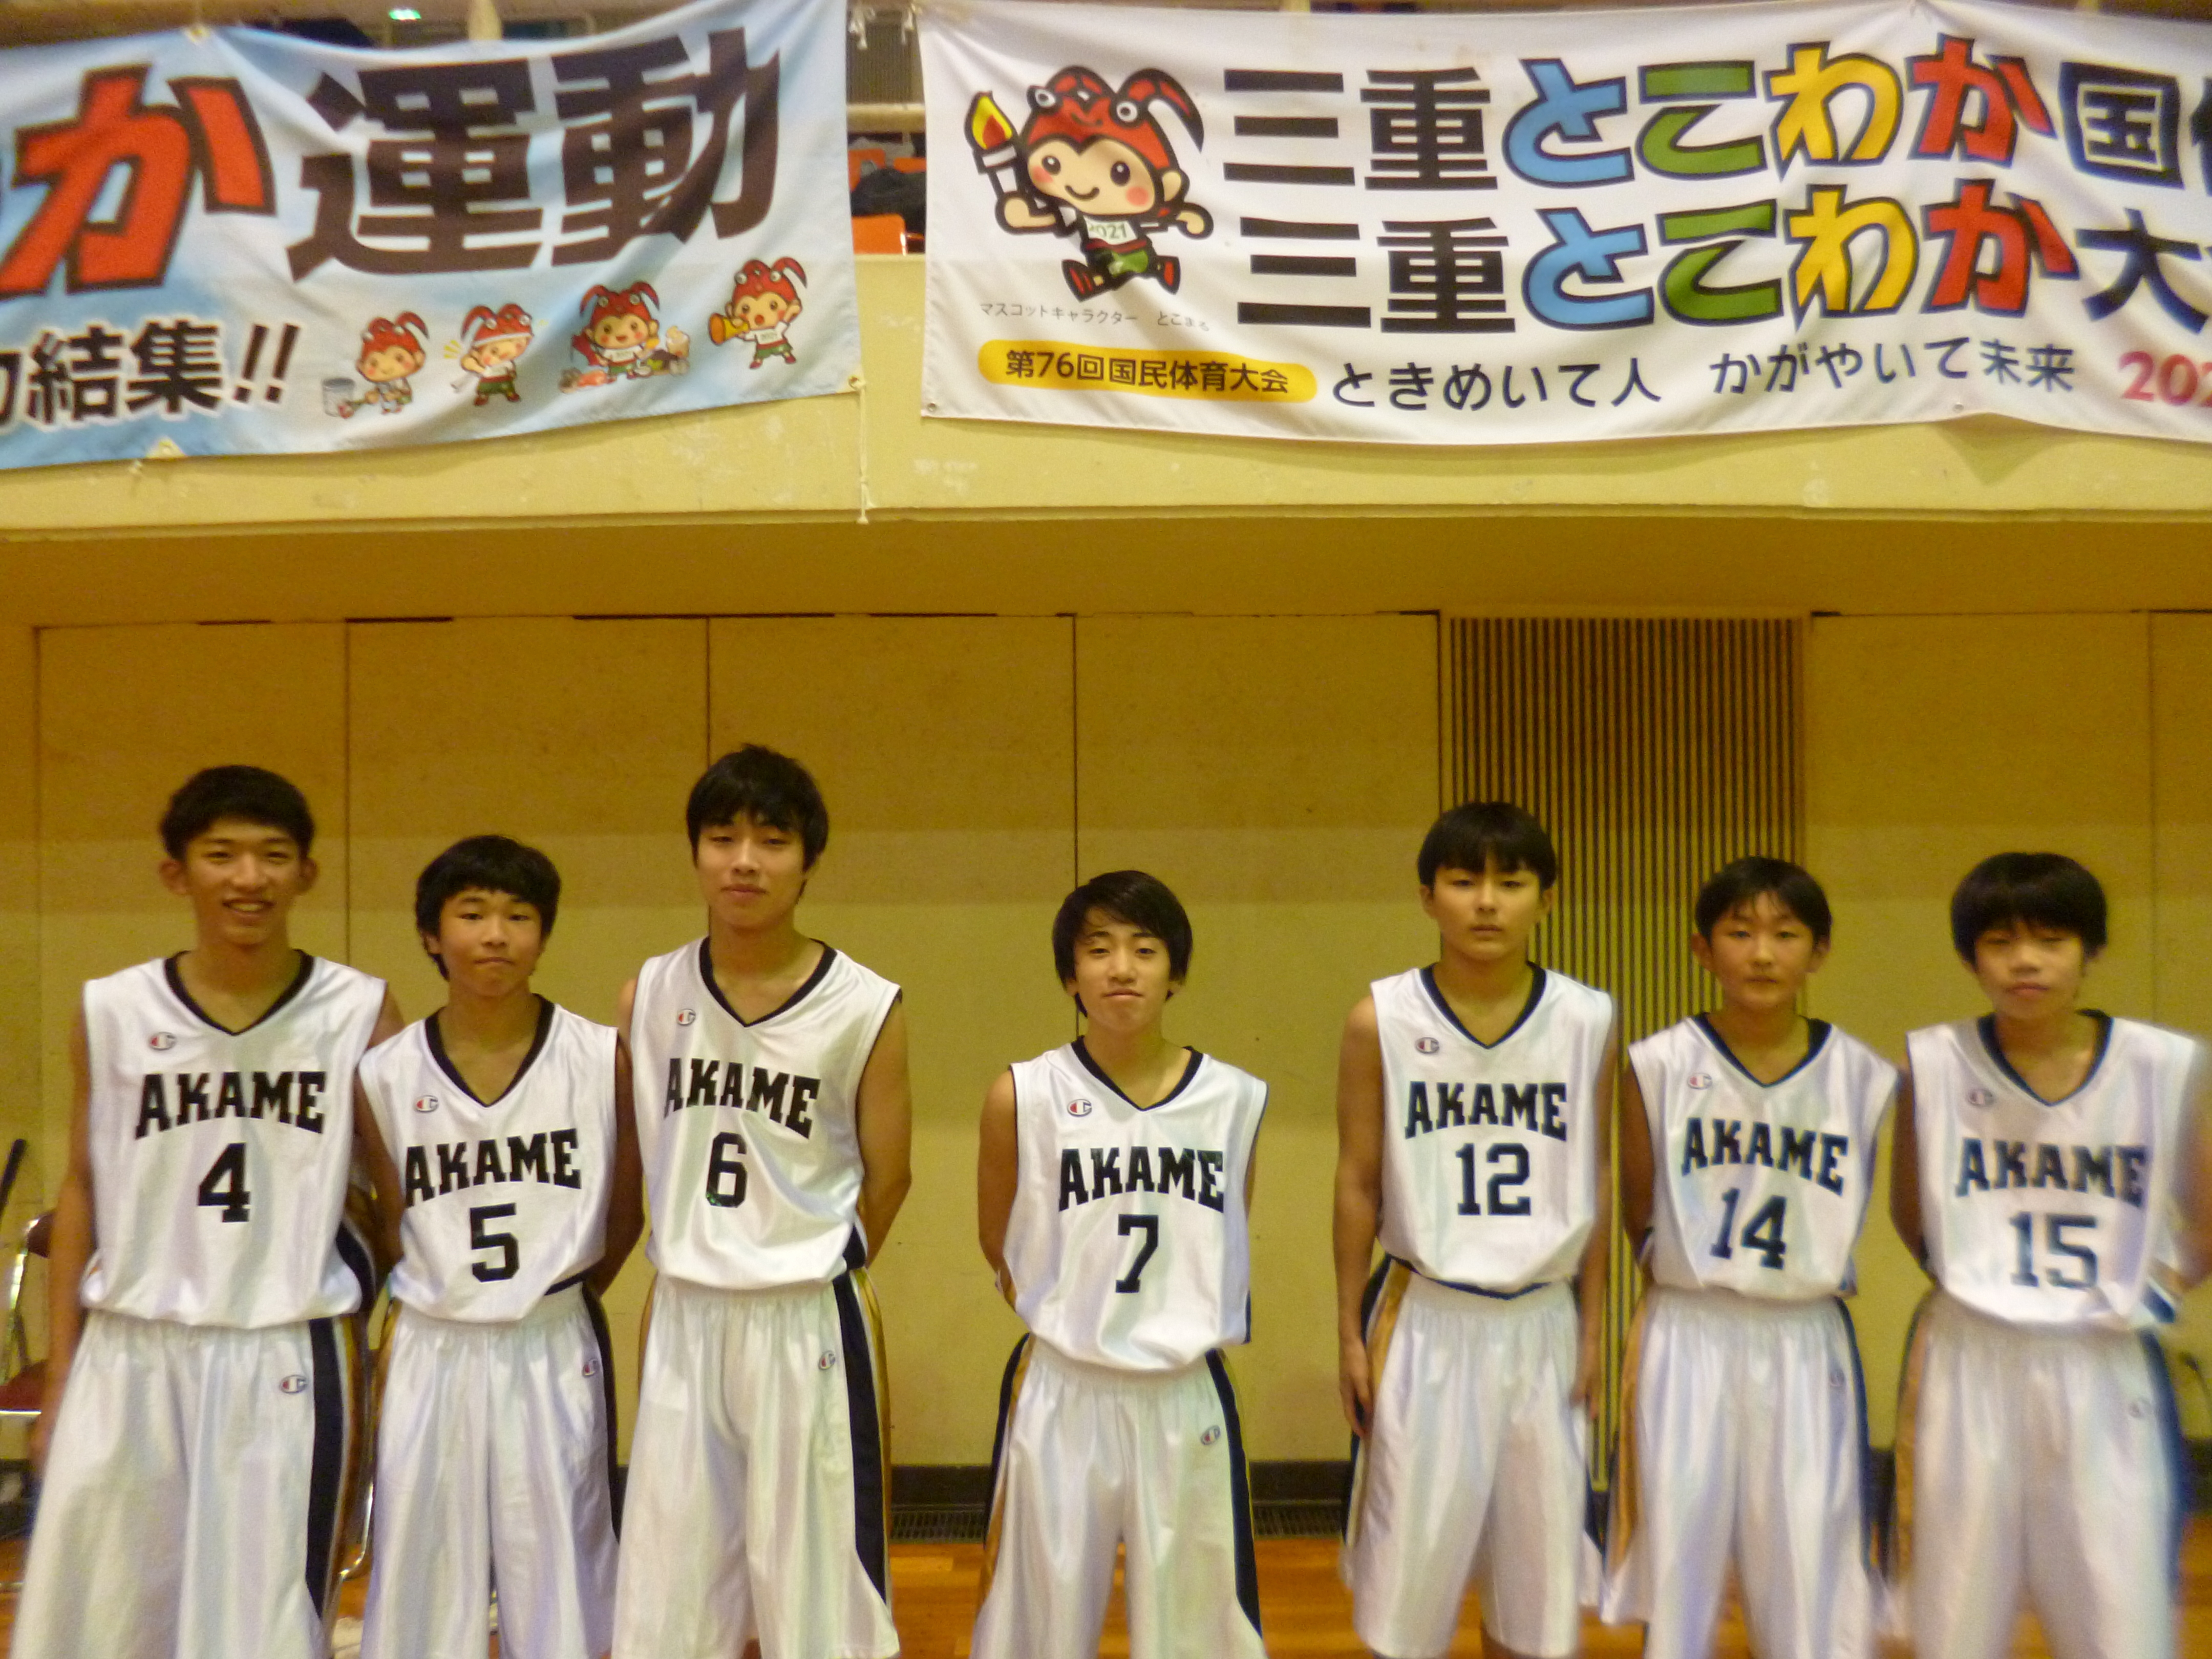 三重県の厚生中学校に講習会 クラブ選手権にも出たりするskyの6人メンバーが 集結して講習会に協力してくれました 10年前三重でよく対決した仲間が協力してくれて嬉しいです ぐっちぃの卓球活動日記 Wrm